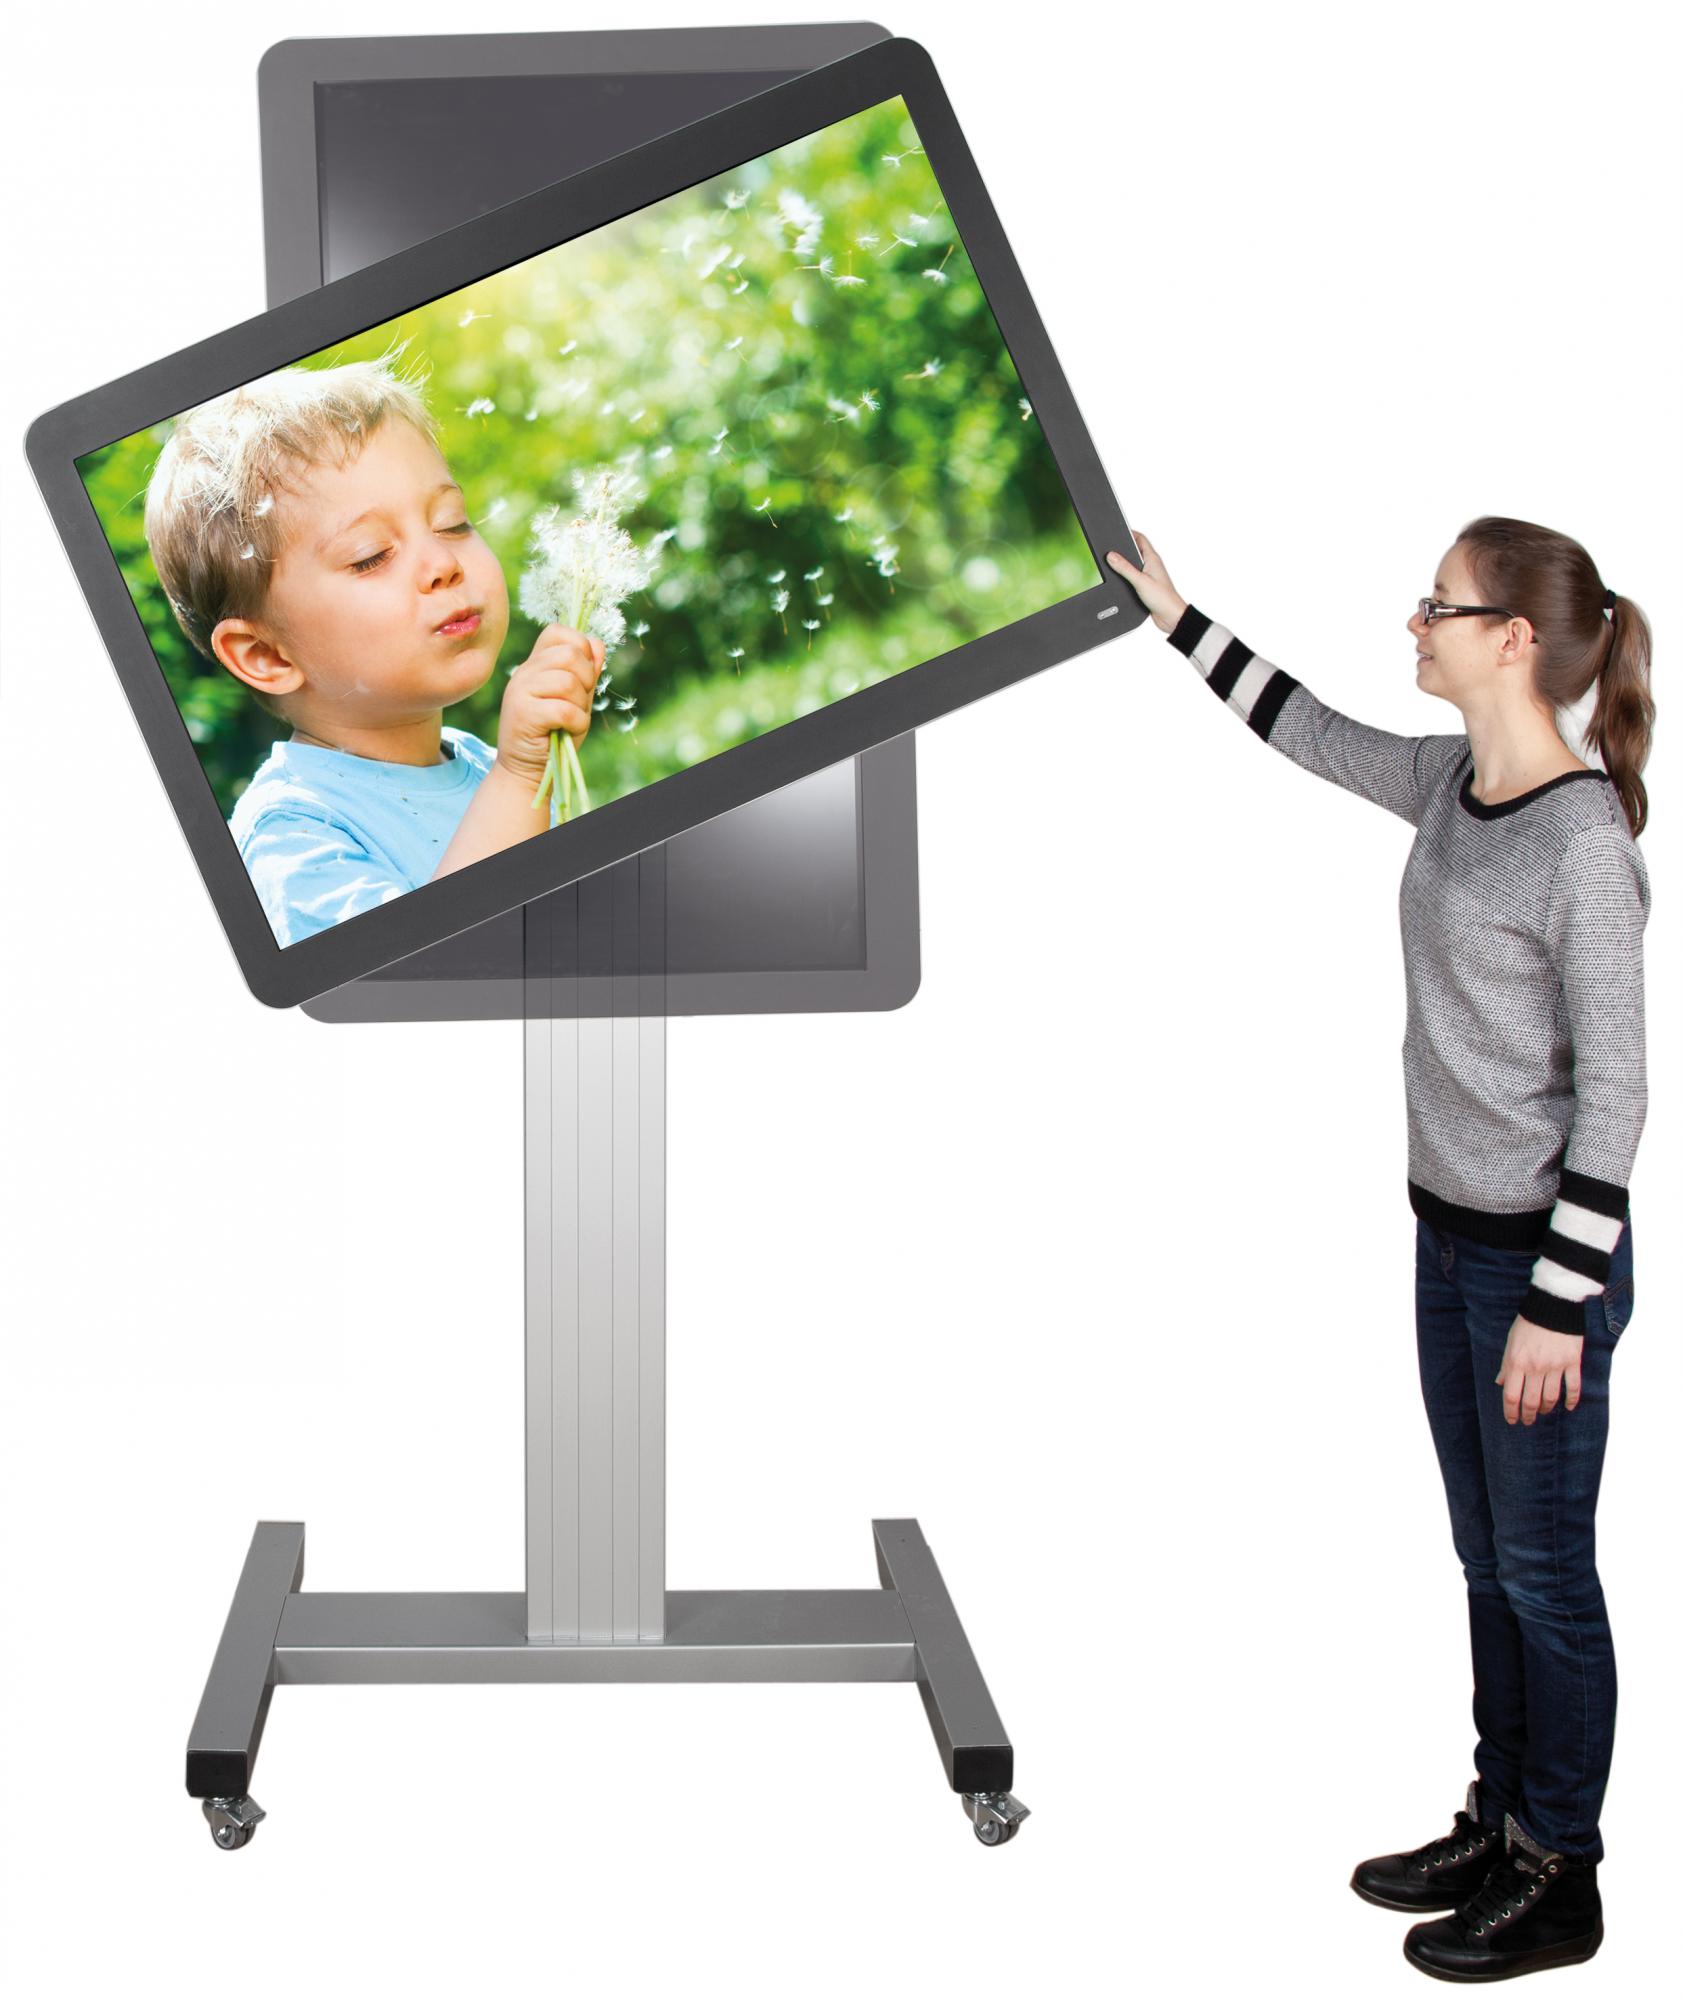 Verrijdbare, vaste TV standaard in portret of landschap modus 175 cm voor 42 tot 100 inch schermen met H-onderstel